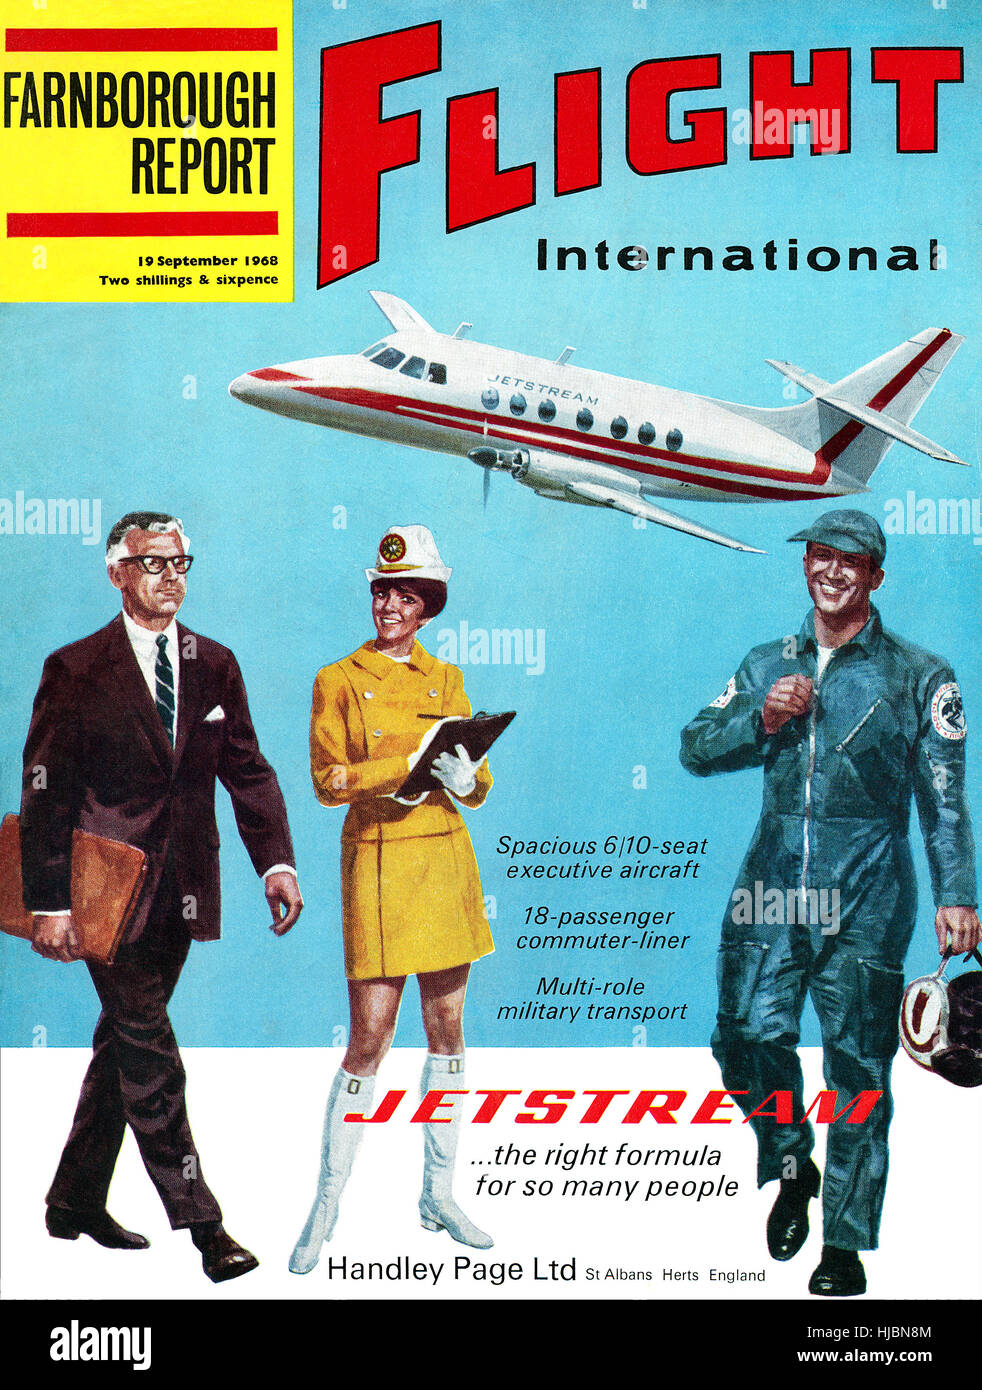 Coperchio anteriore del volo la rivista internazionale per il 19 settembre 1968, dotato di un annuncio pubblicitario per l'Handley Page Jetstream aeromobile Foto Stock